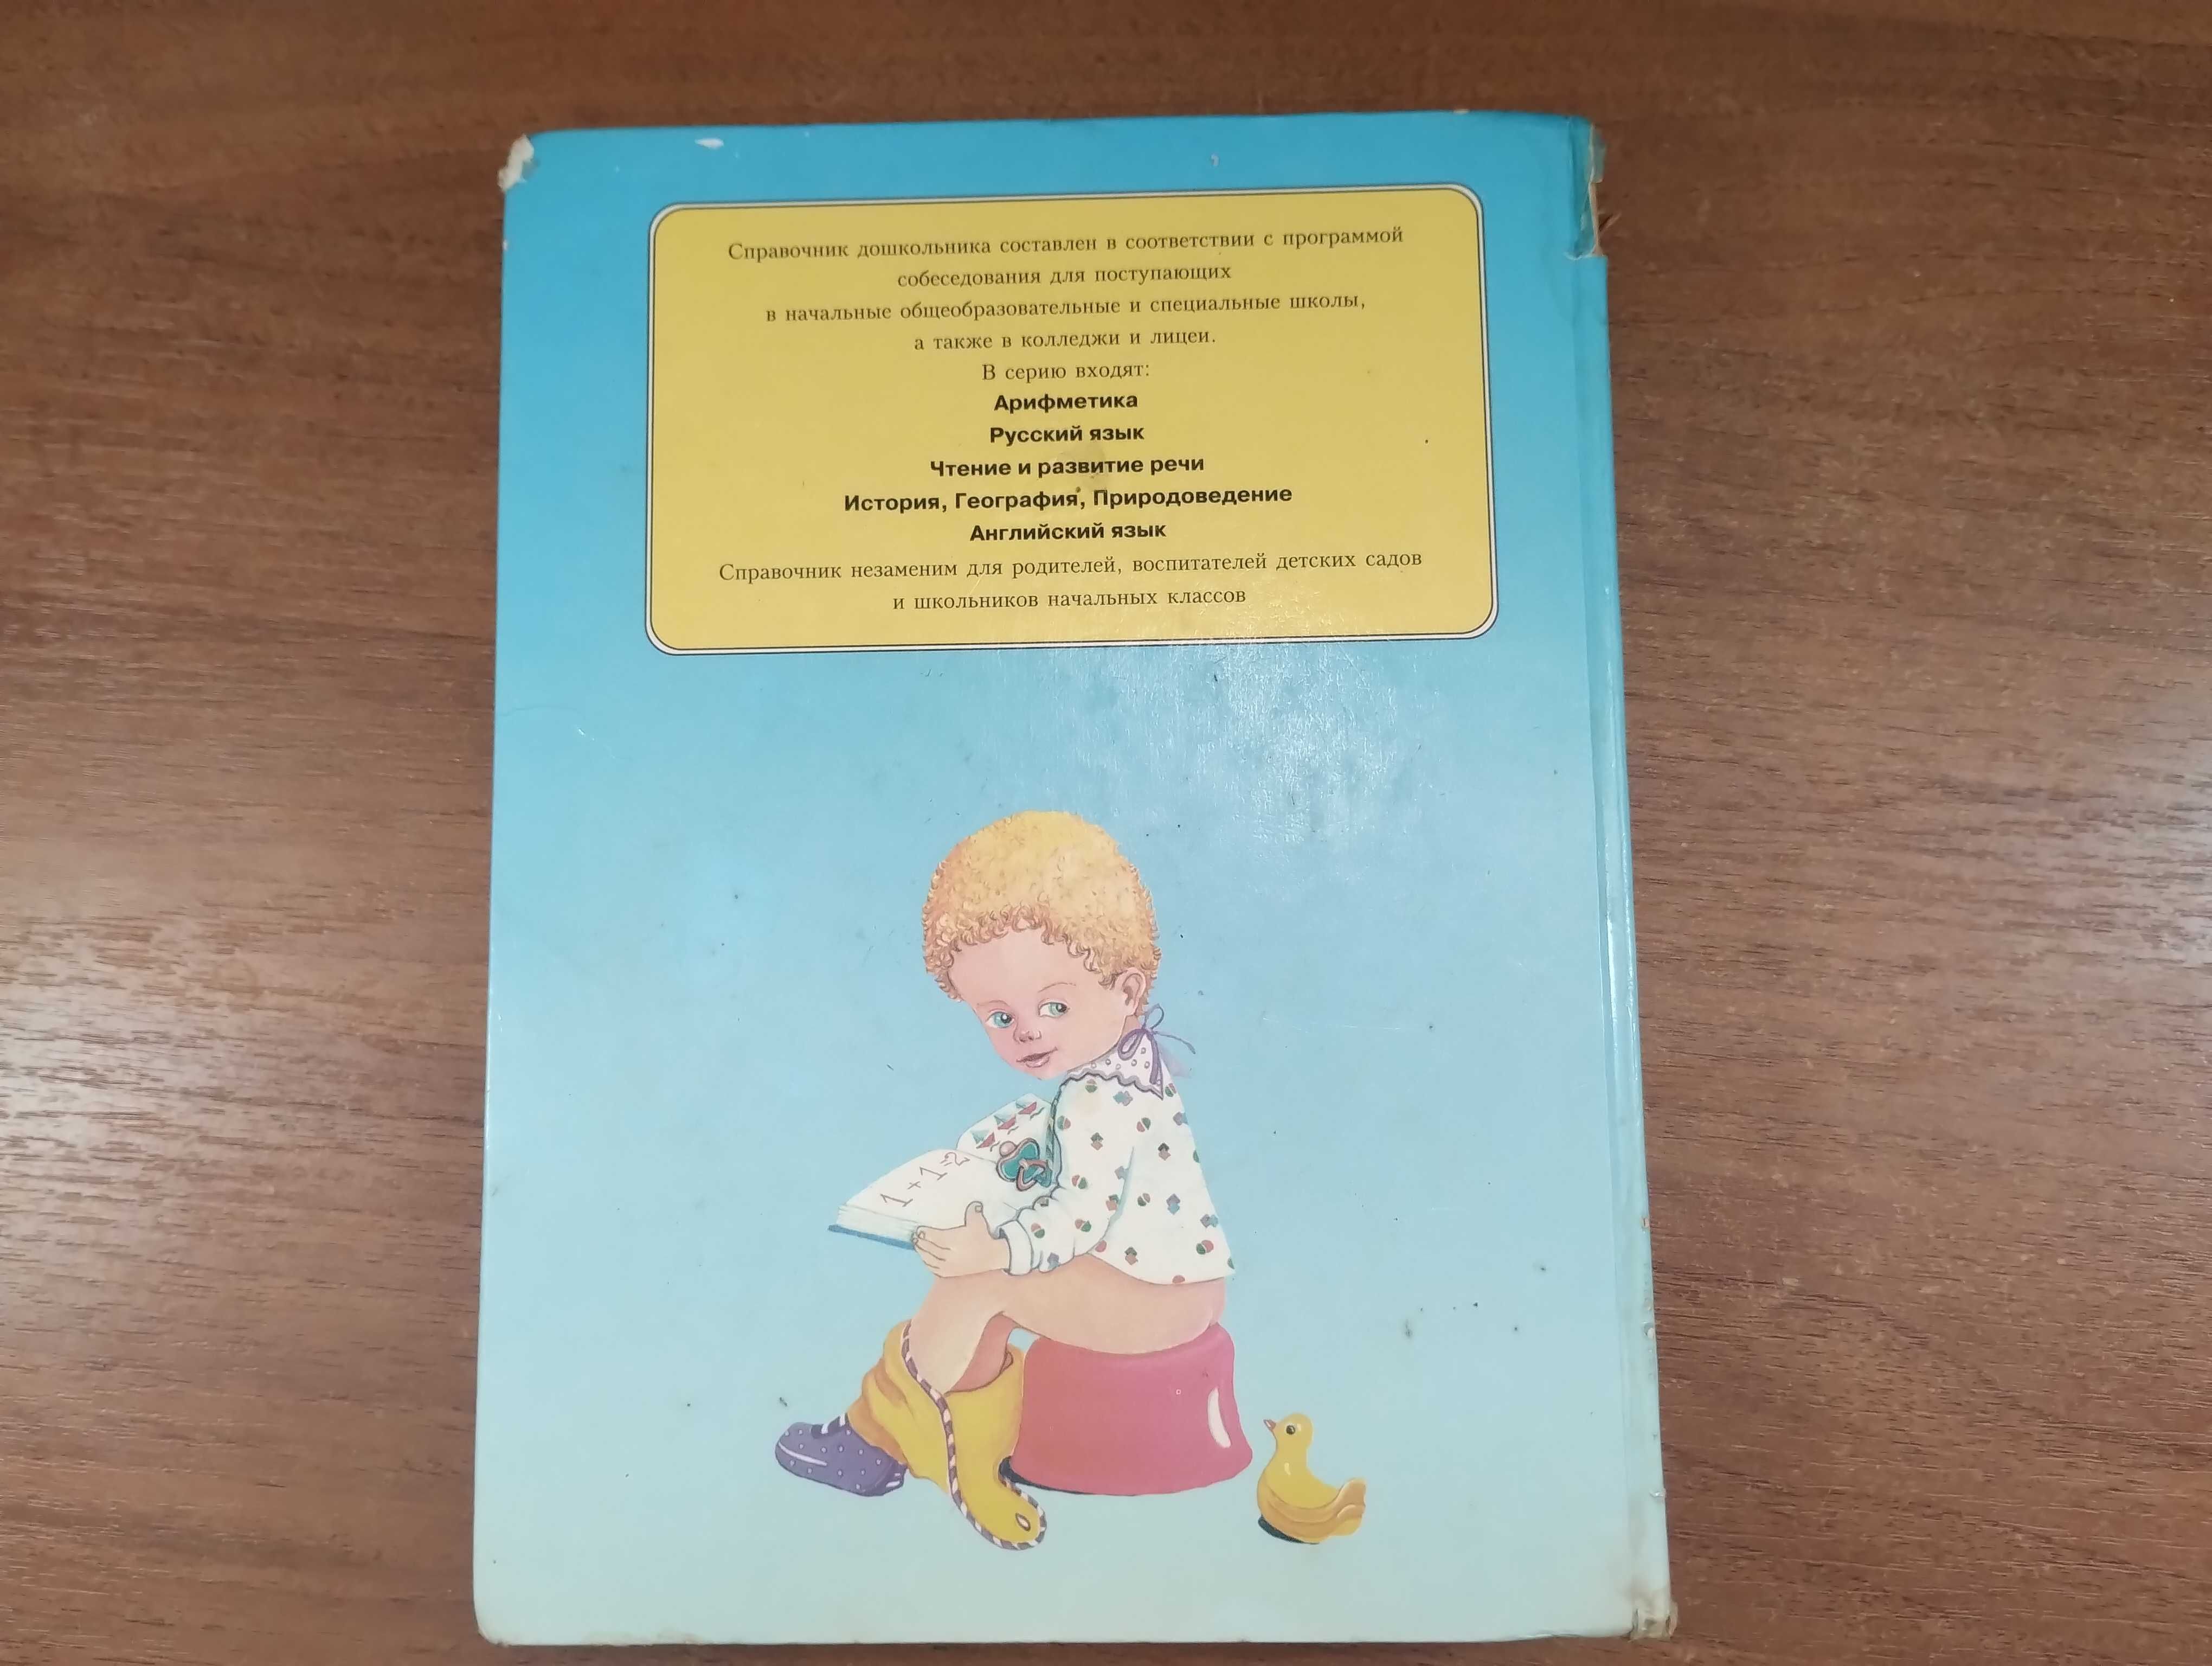 Арифметика для детей 3-6 лет: Справочник дошкольника (Шалаева)